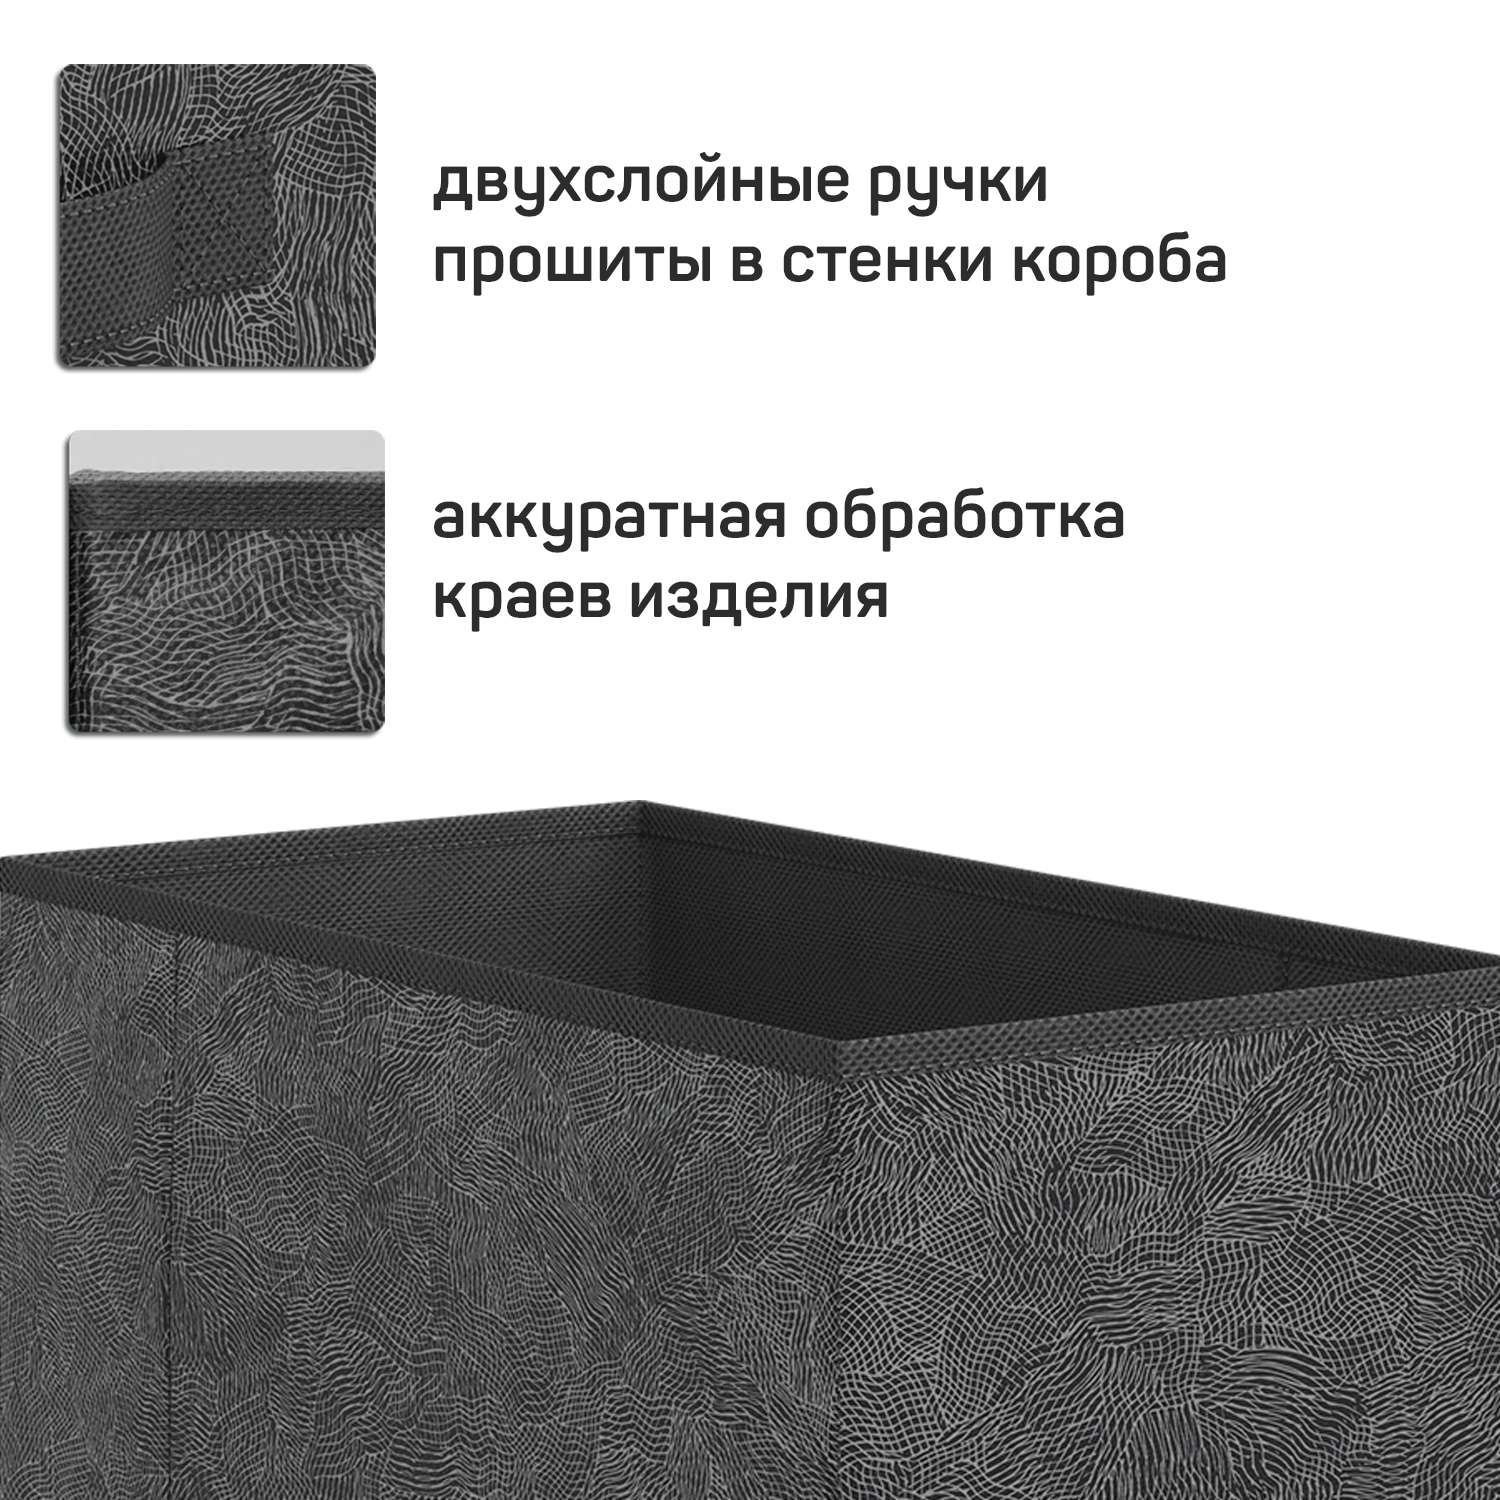 Короб стеллажный VALIANT 15*31*31 см набор 4 шт - фото 7